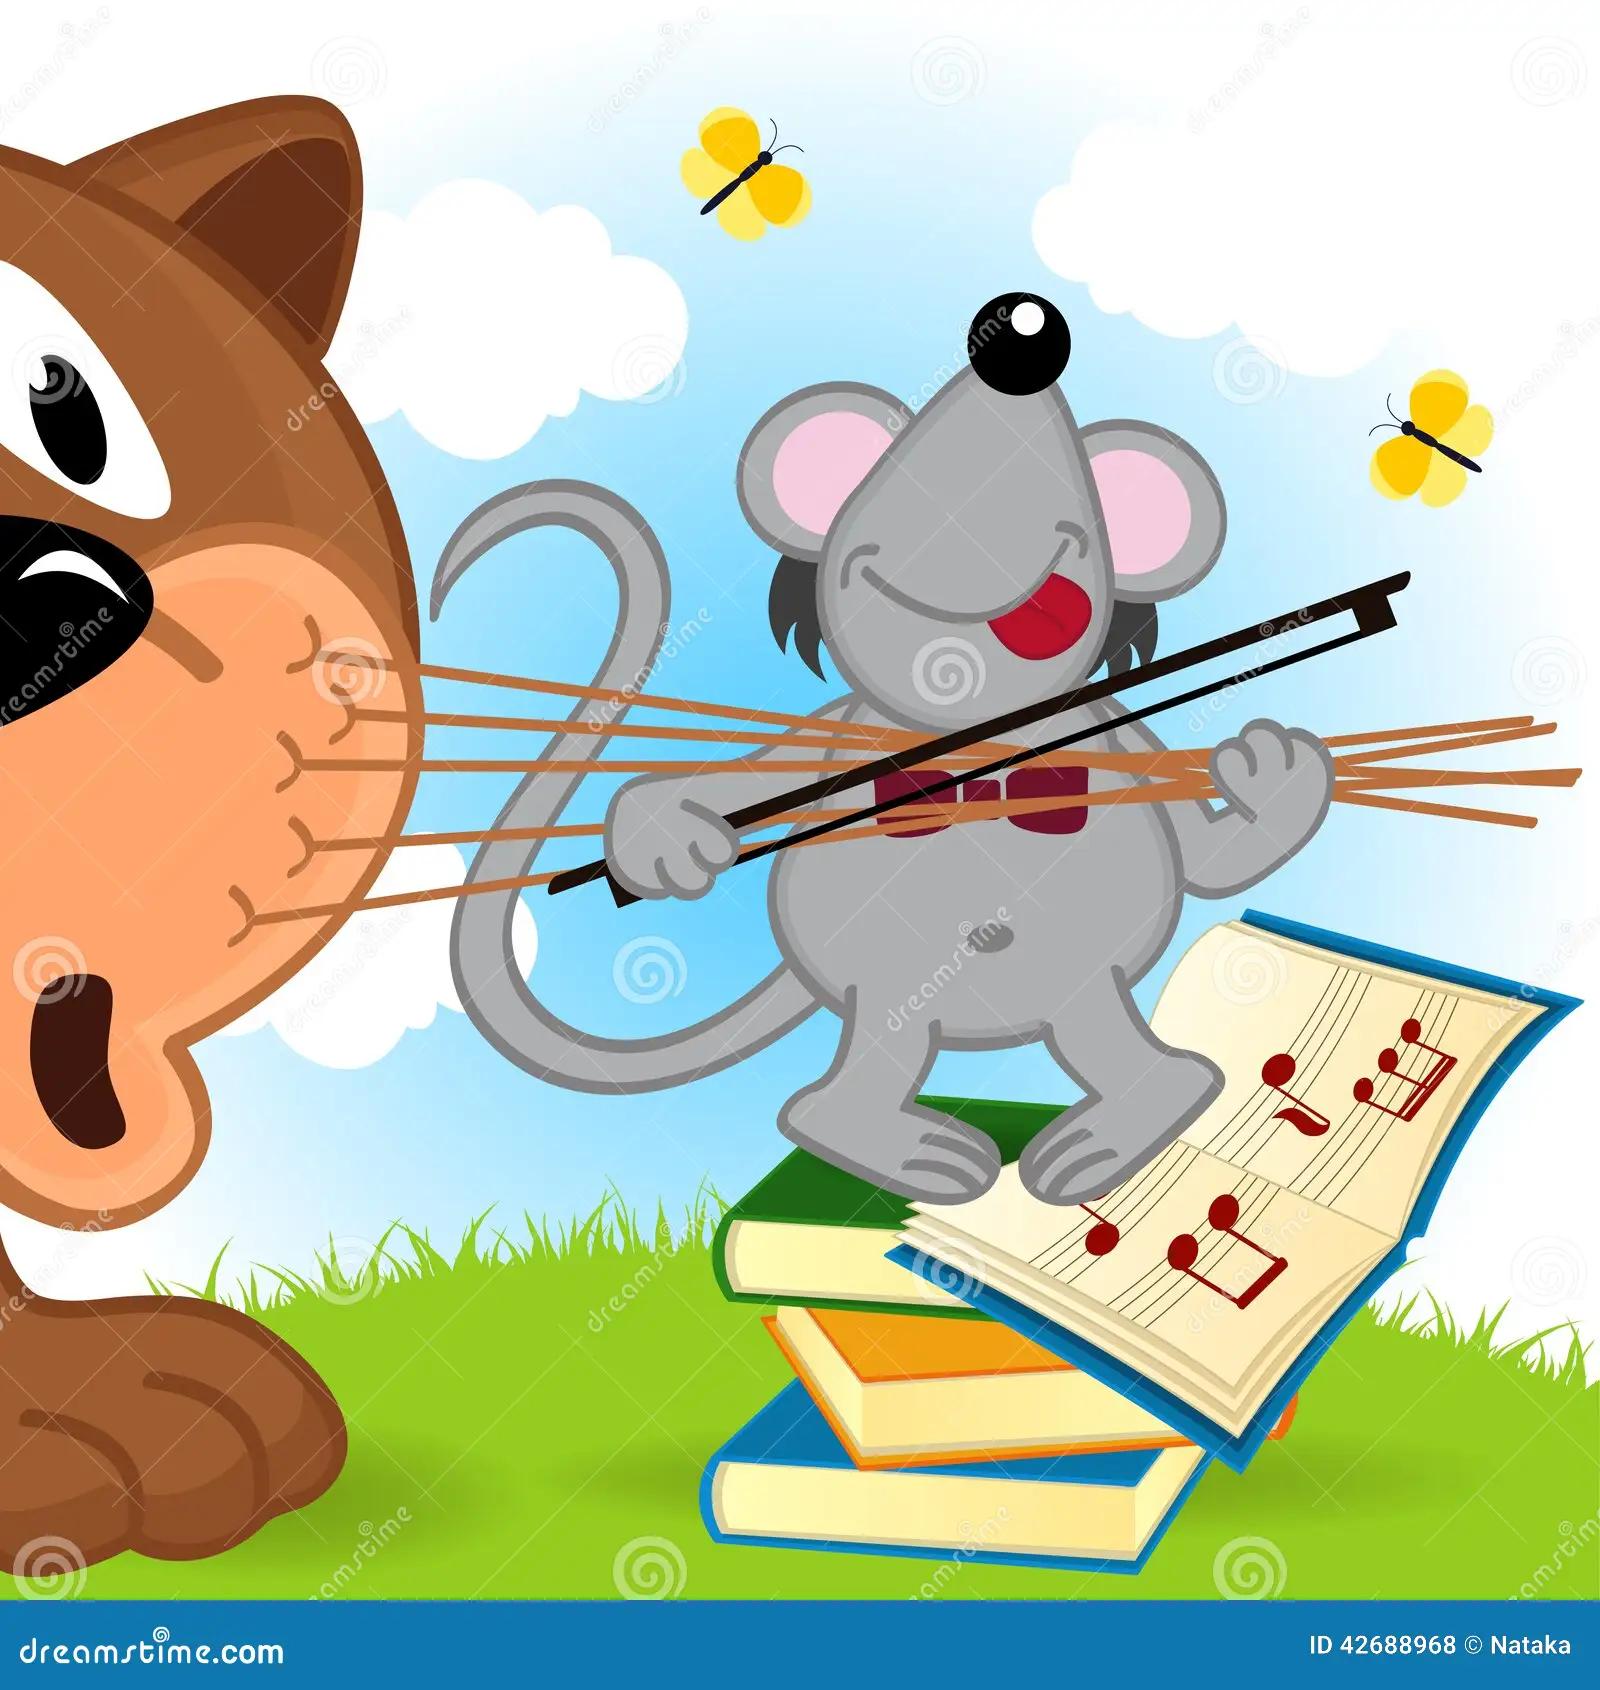 el raton y el gato violinista - Cuál es la relación entre el gato y el ratón